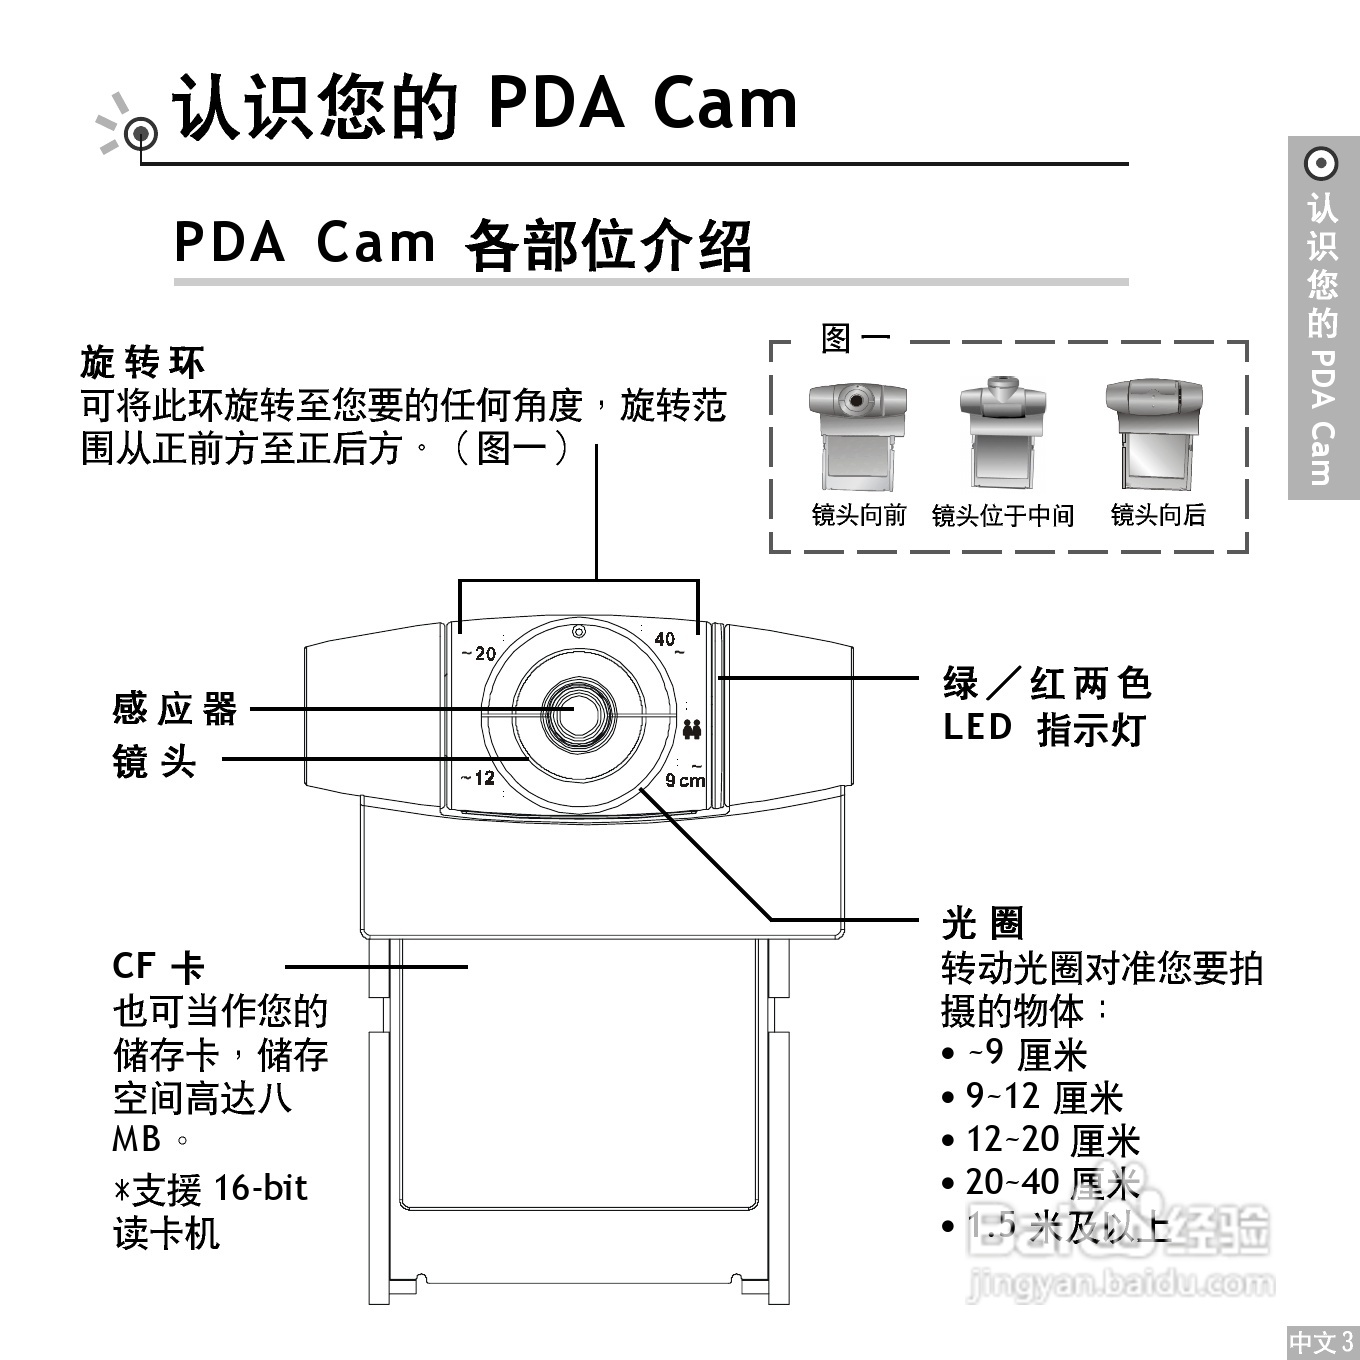 鸿友pda cam 3008 摄像头使用说明书